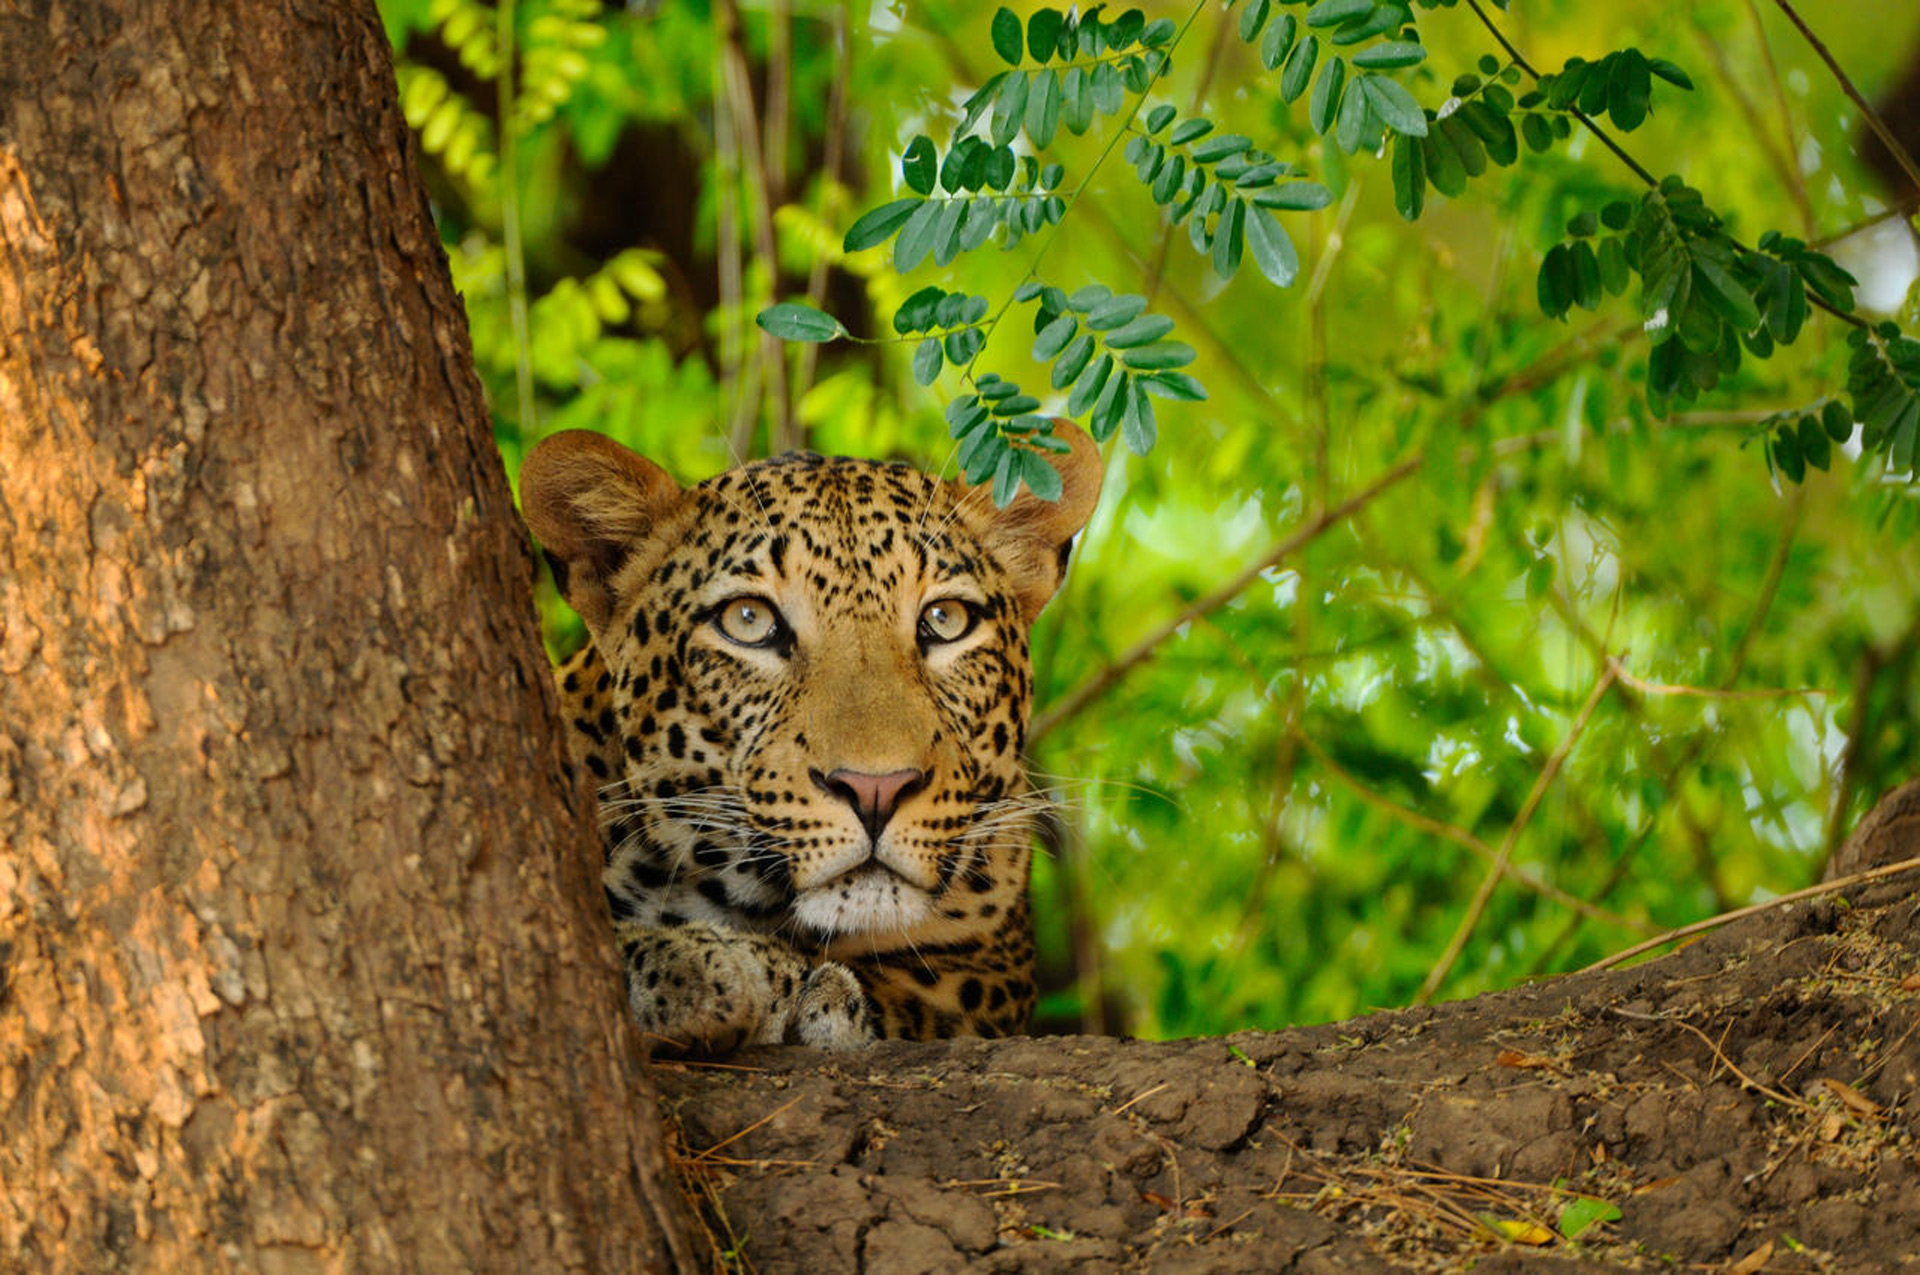 Leopard sitting in a tree